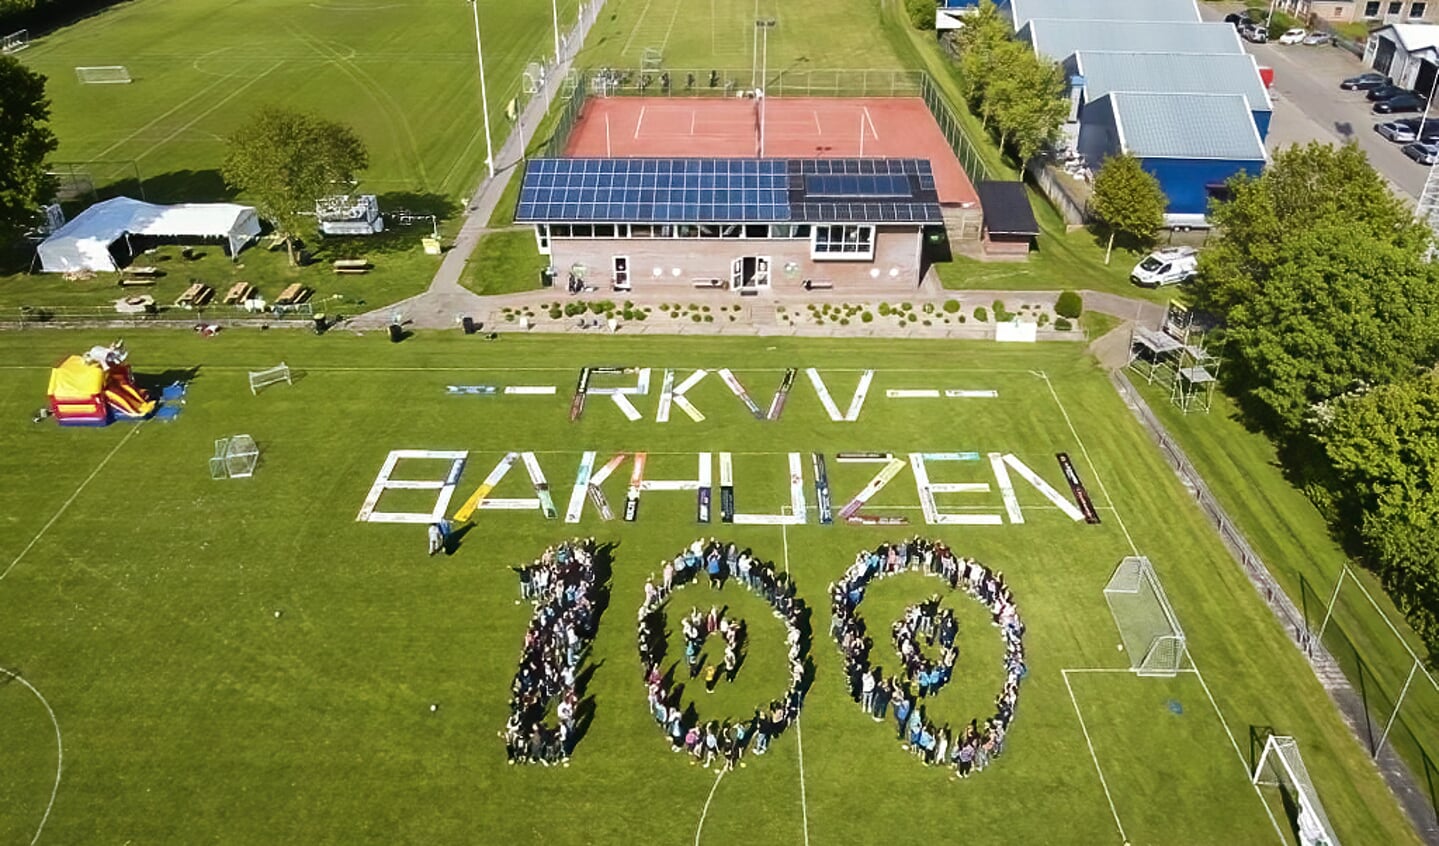 RKVV Bakhuizen viert het eeuwfeest Eigen foto